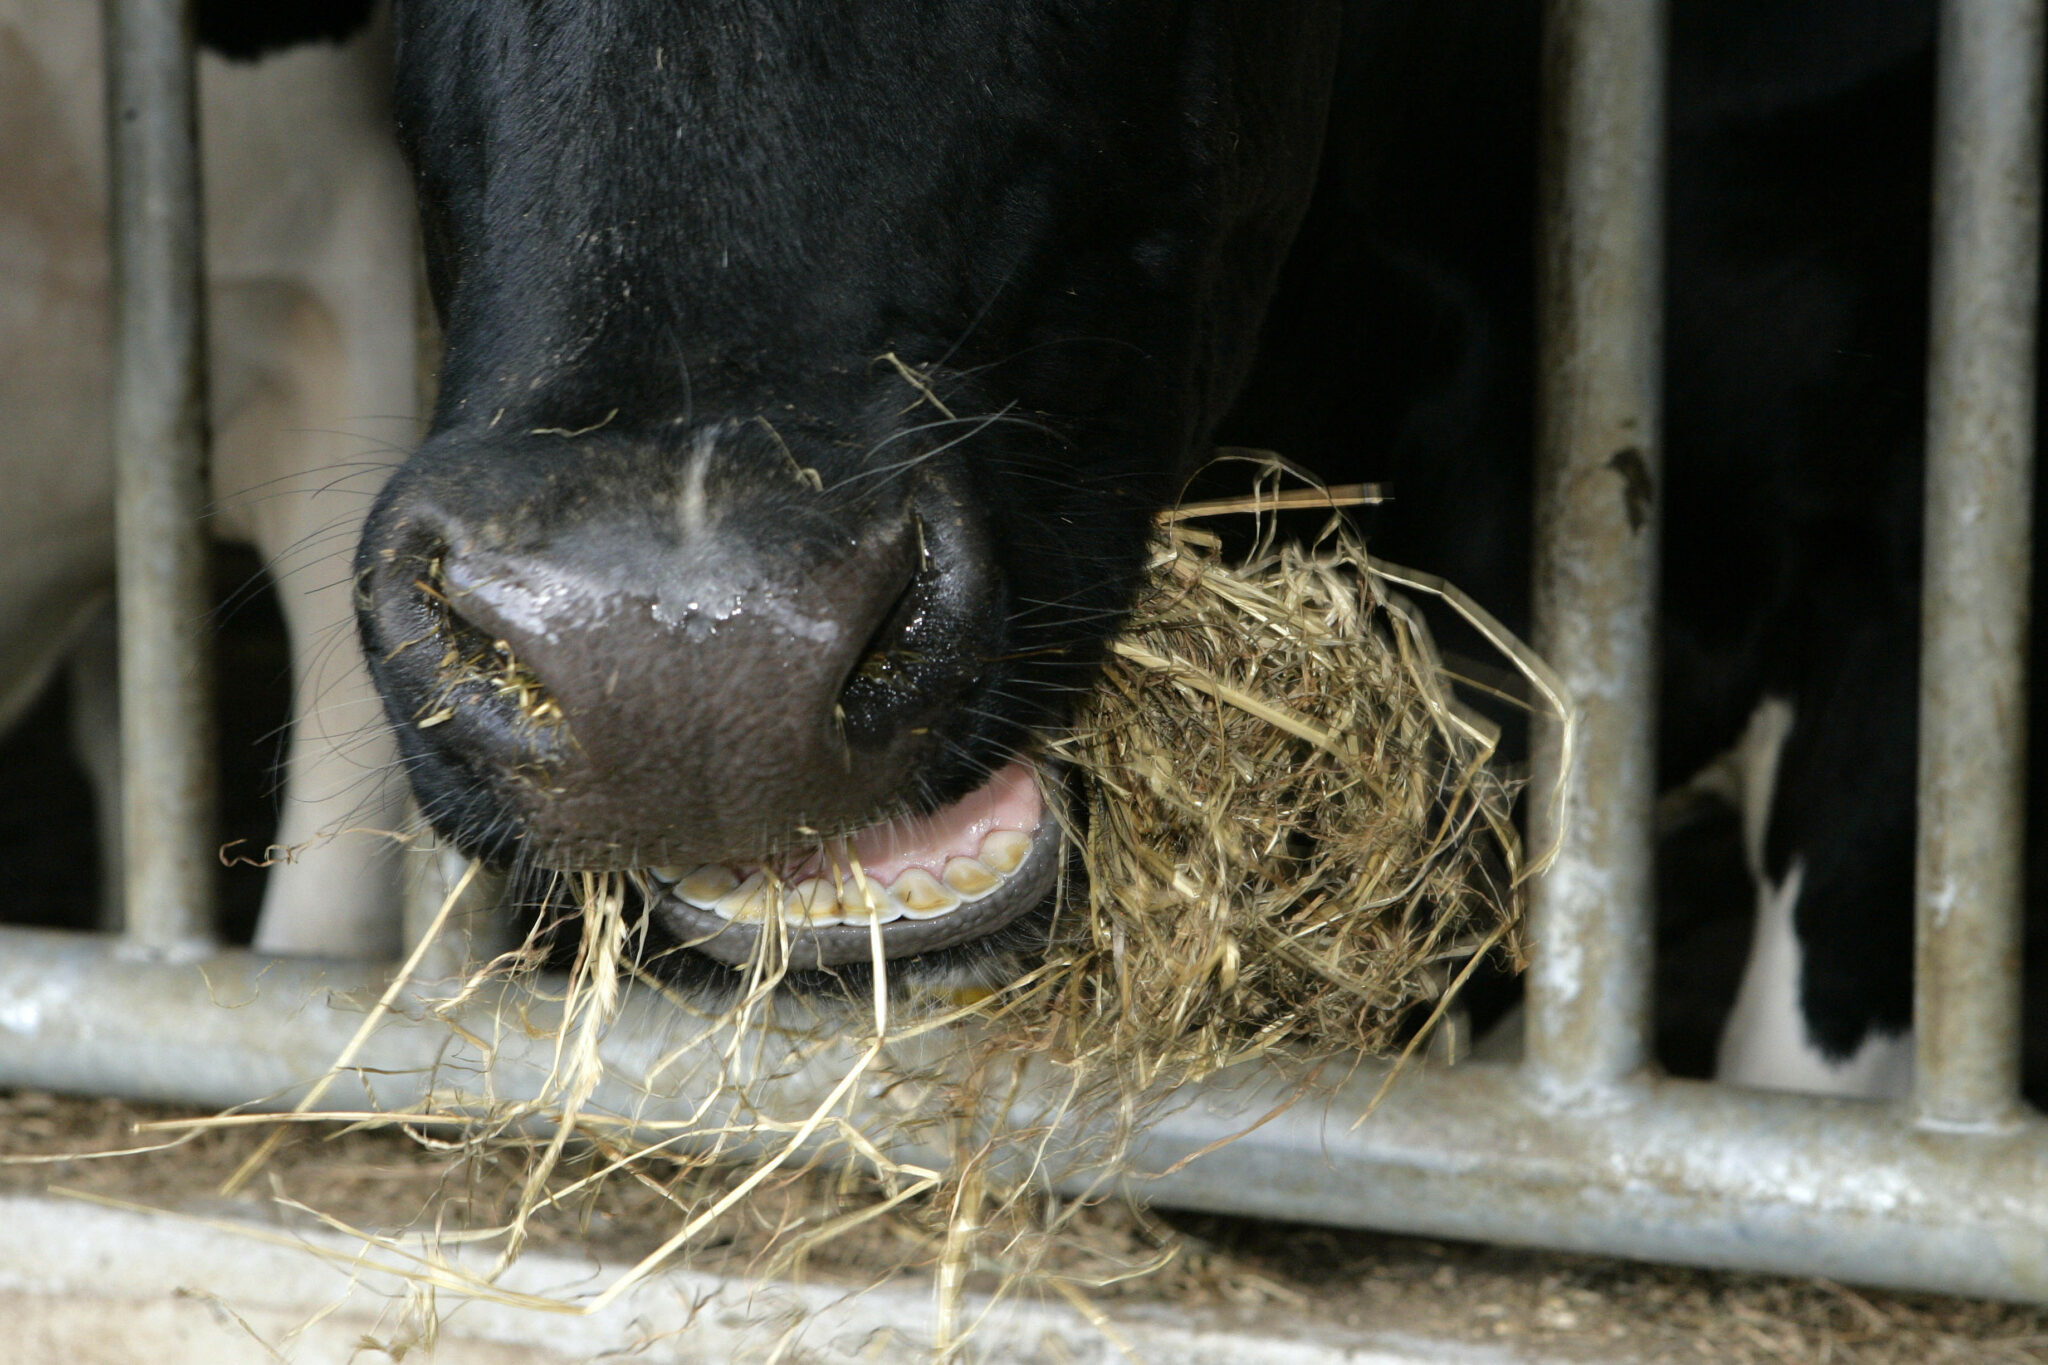 Как выглядит жвачка у коровы фото